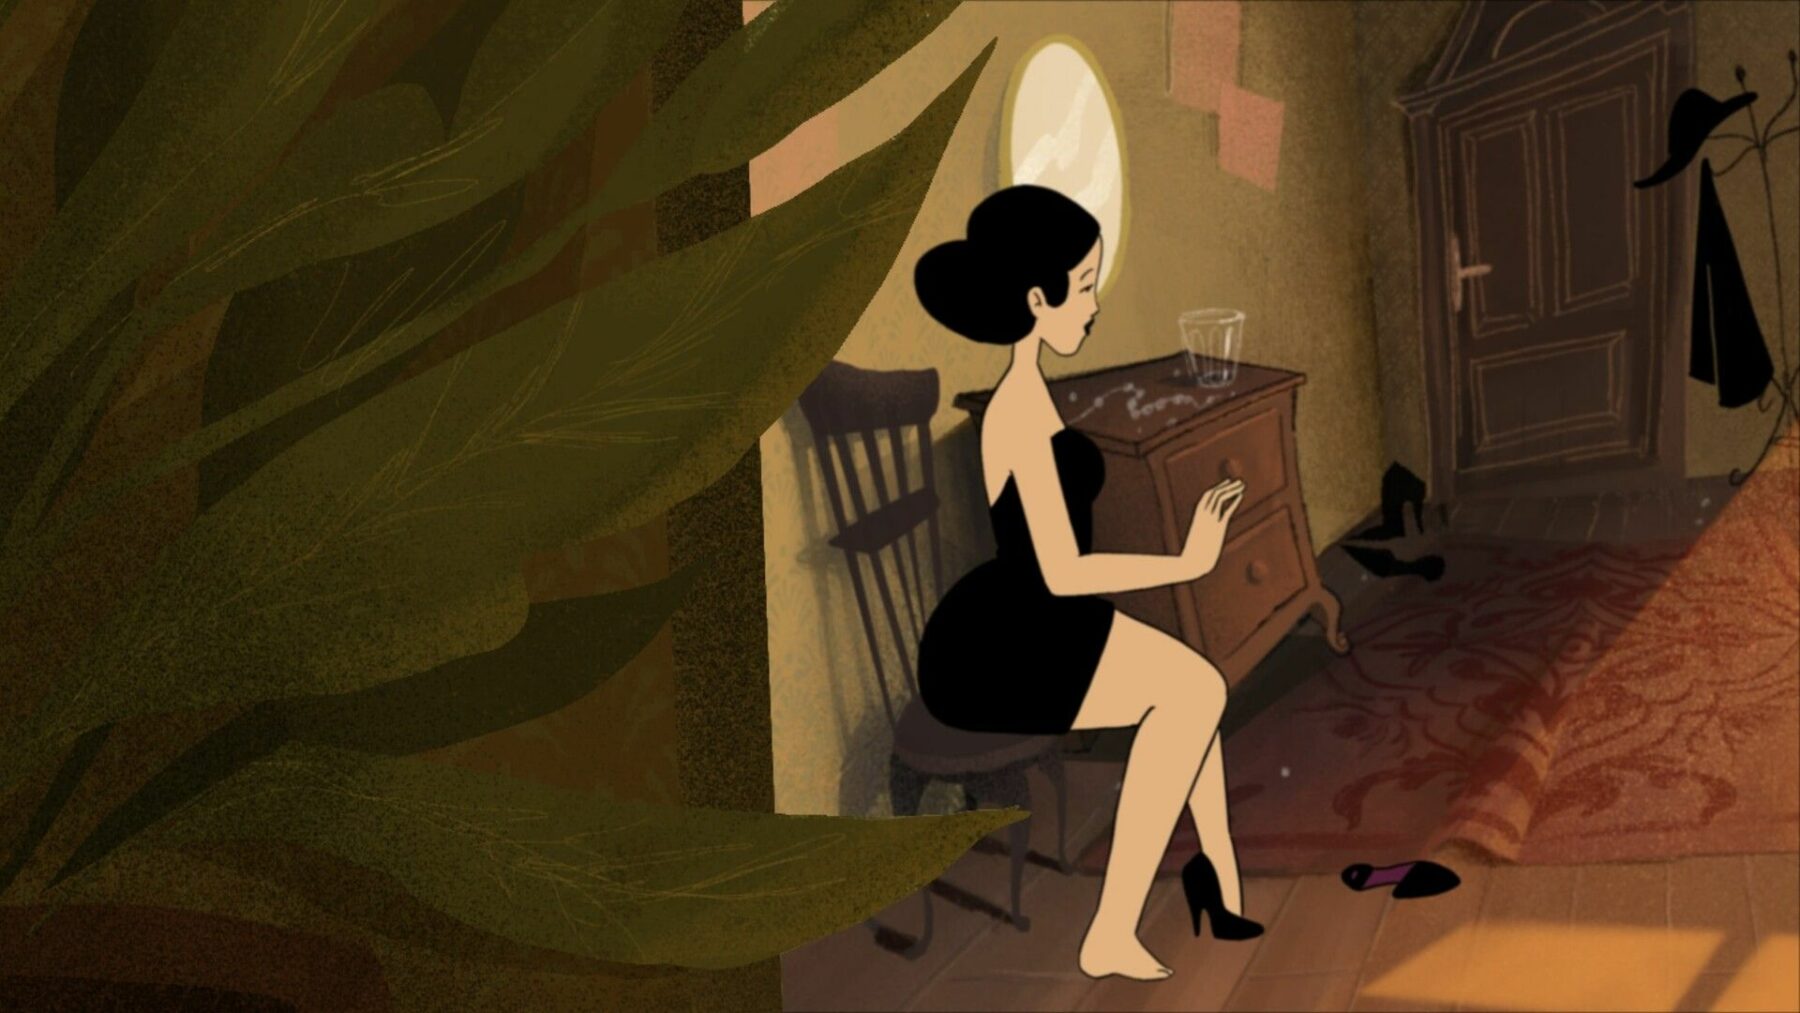 Kadr z animacji z kobietą szykującą się do wyjścia.